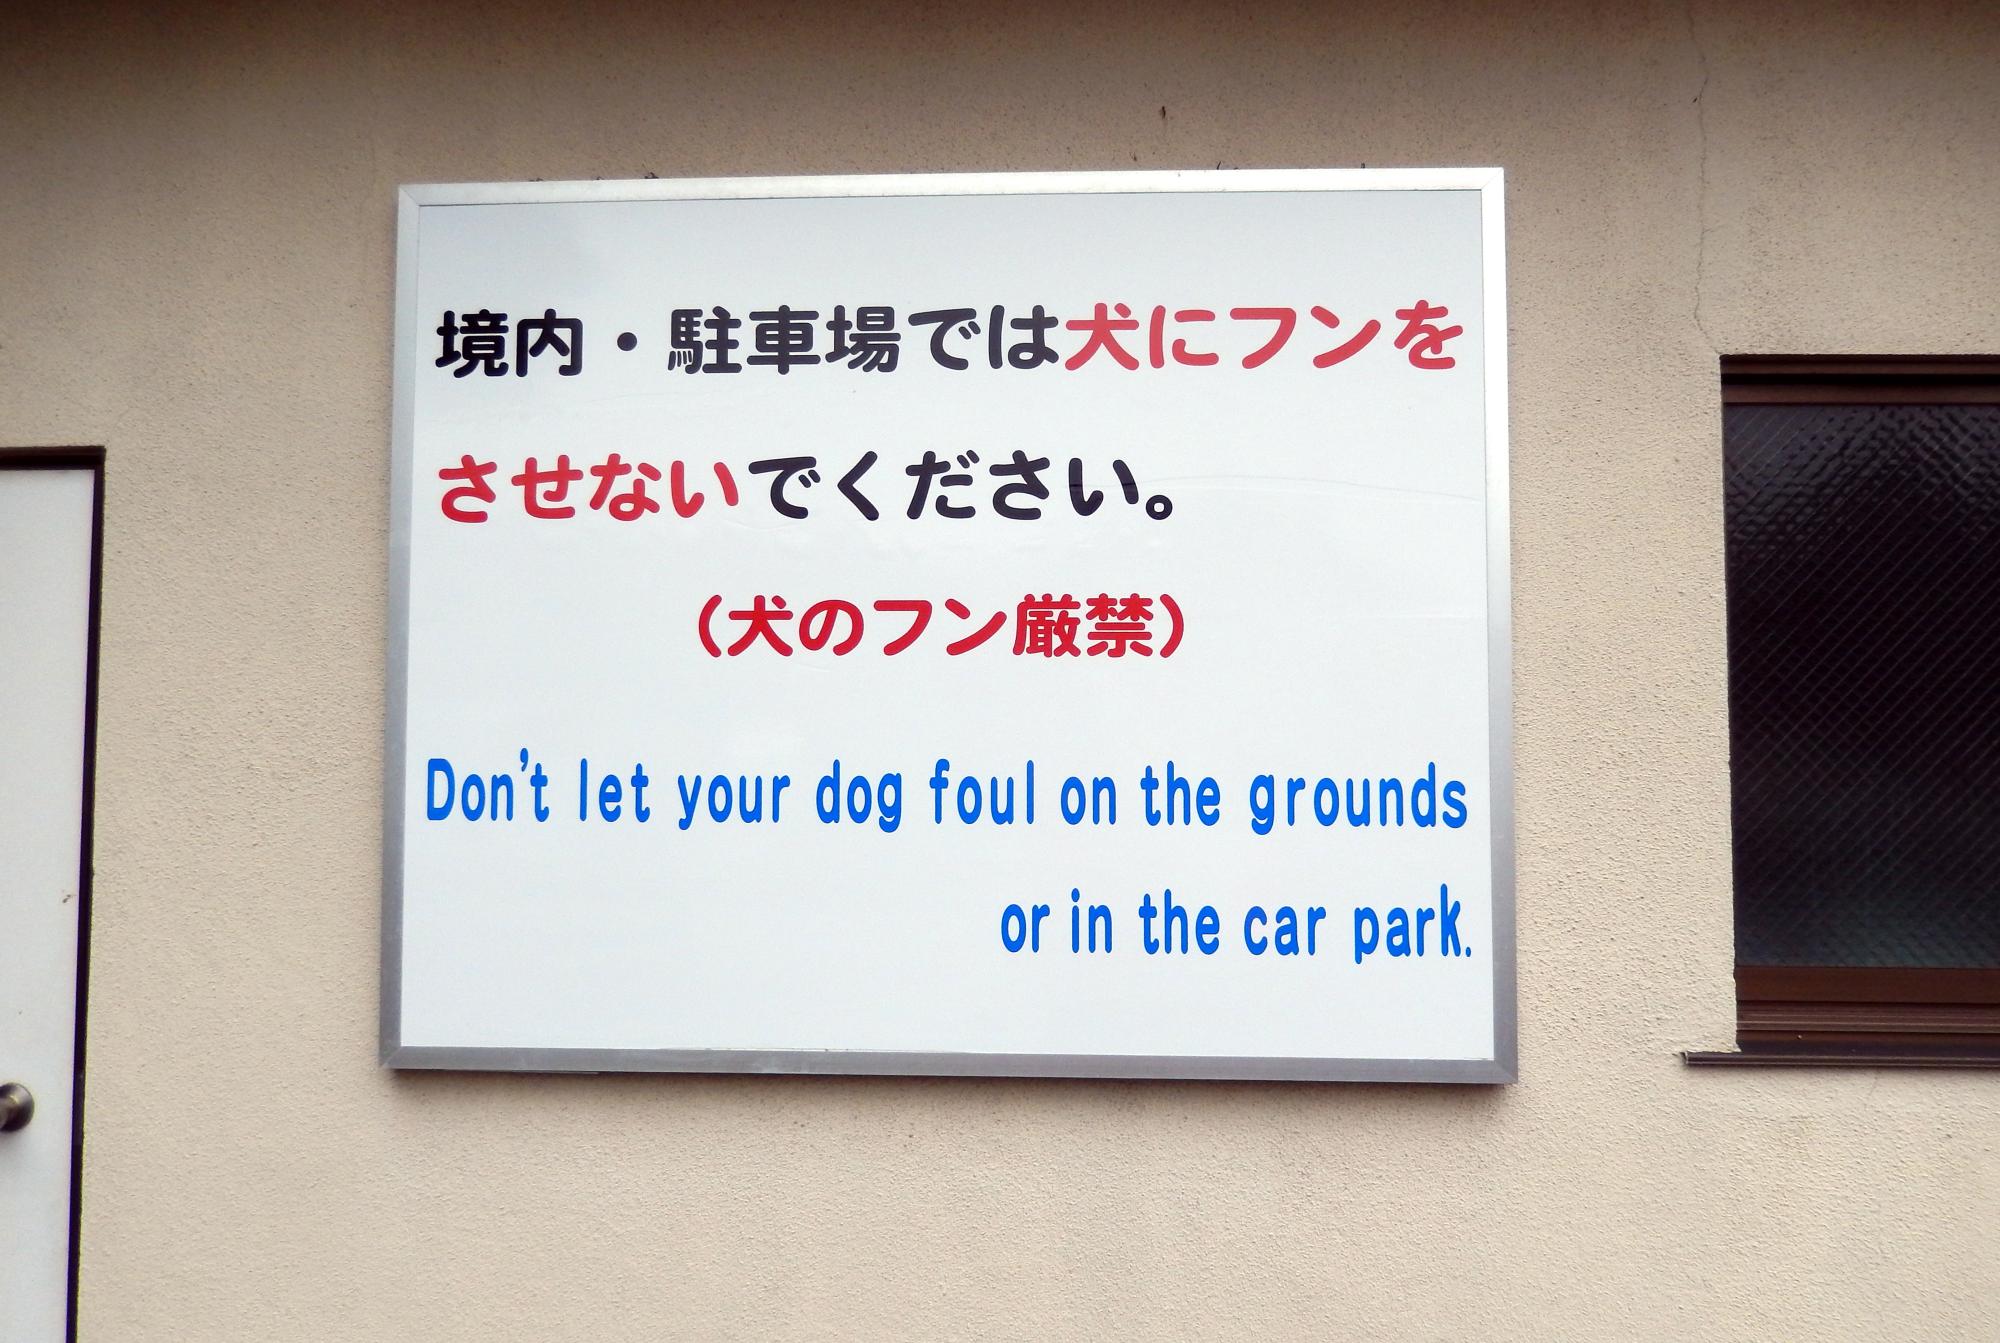 Signs Of Japan - No Dog Poop